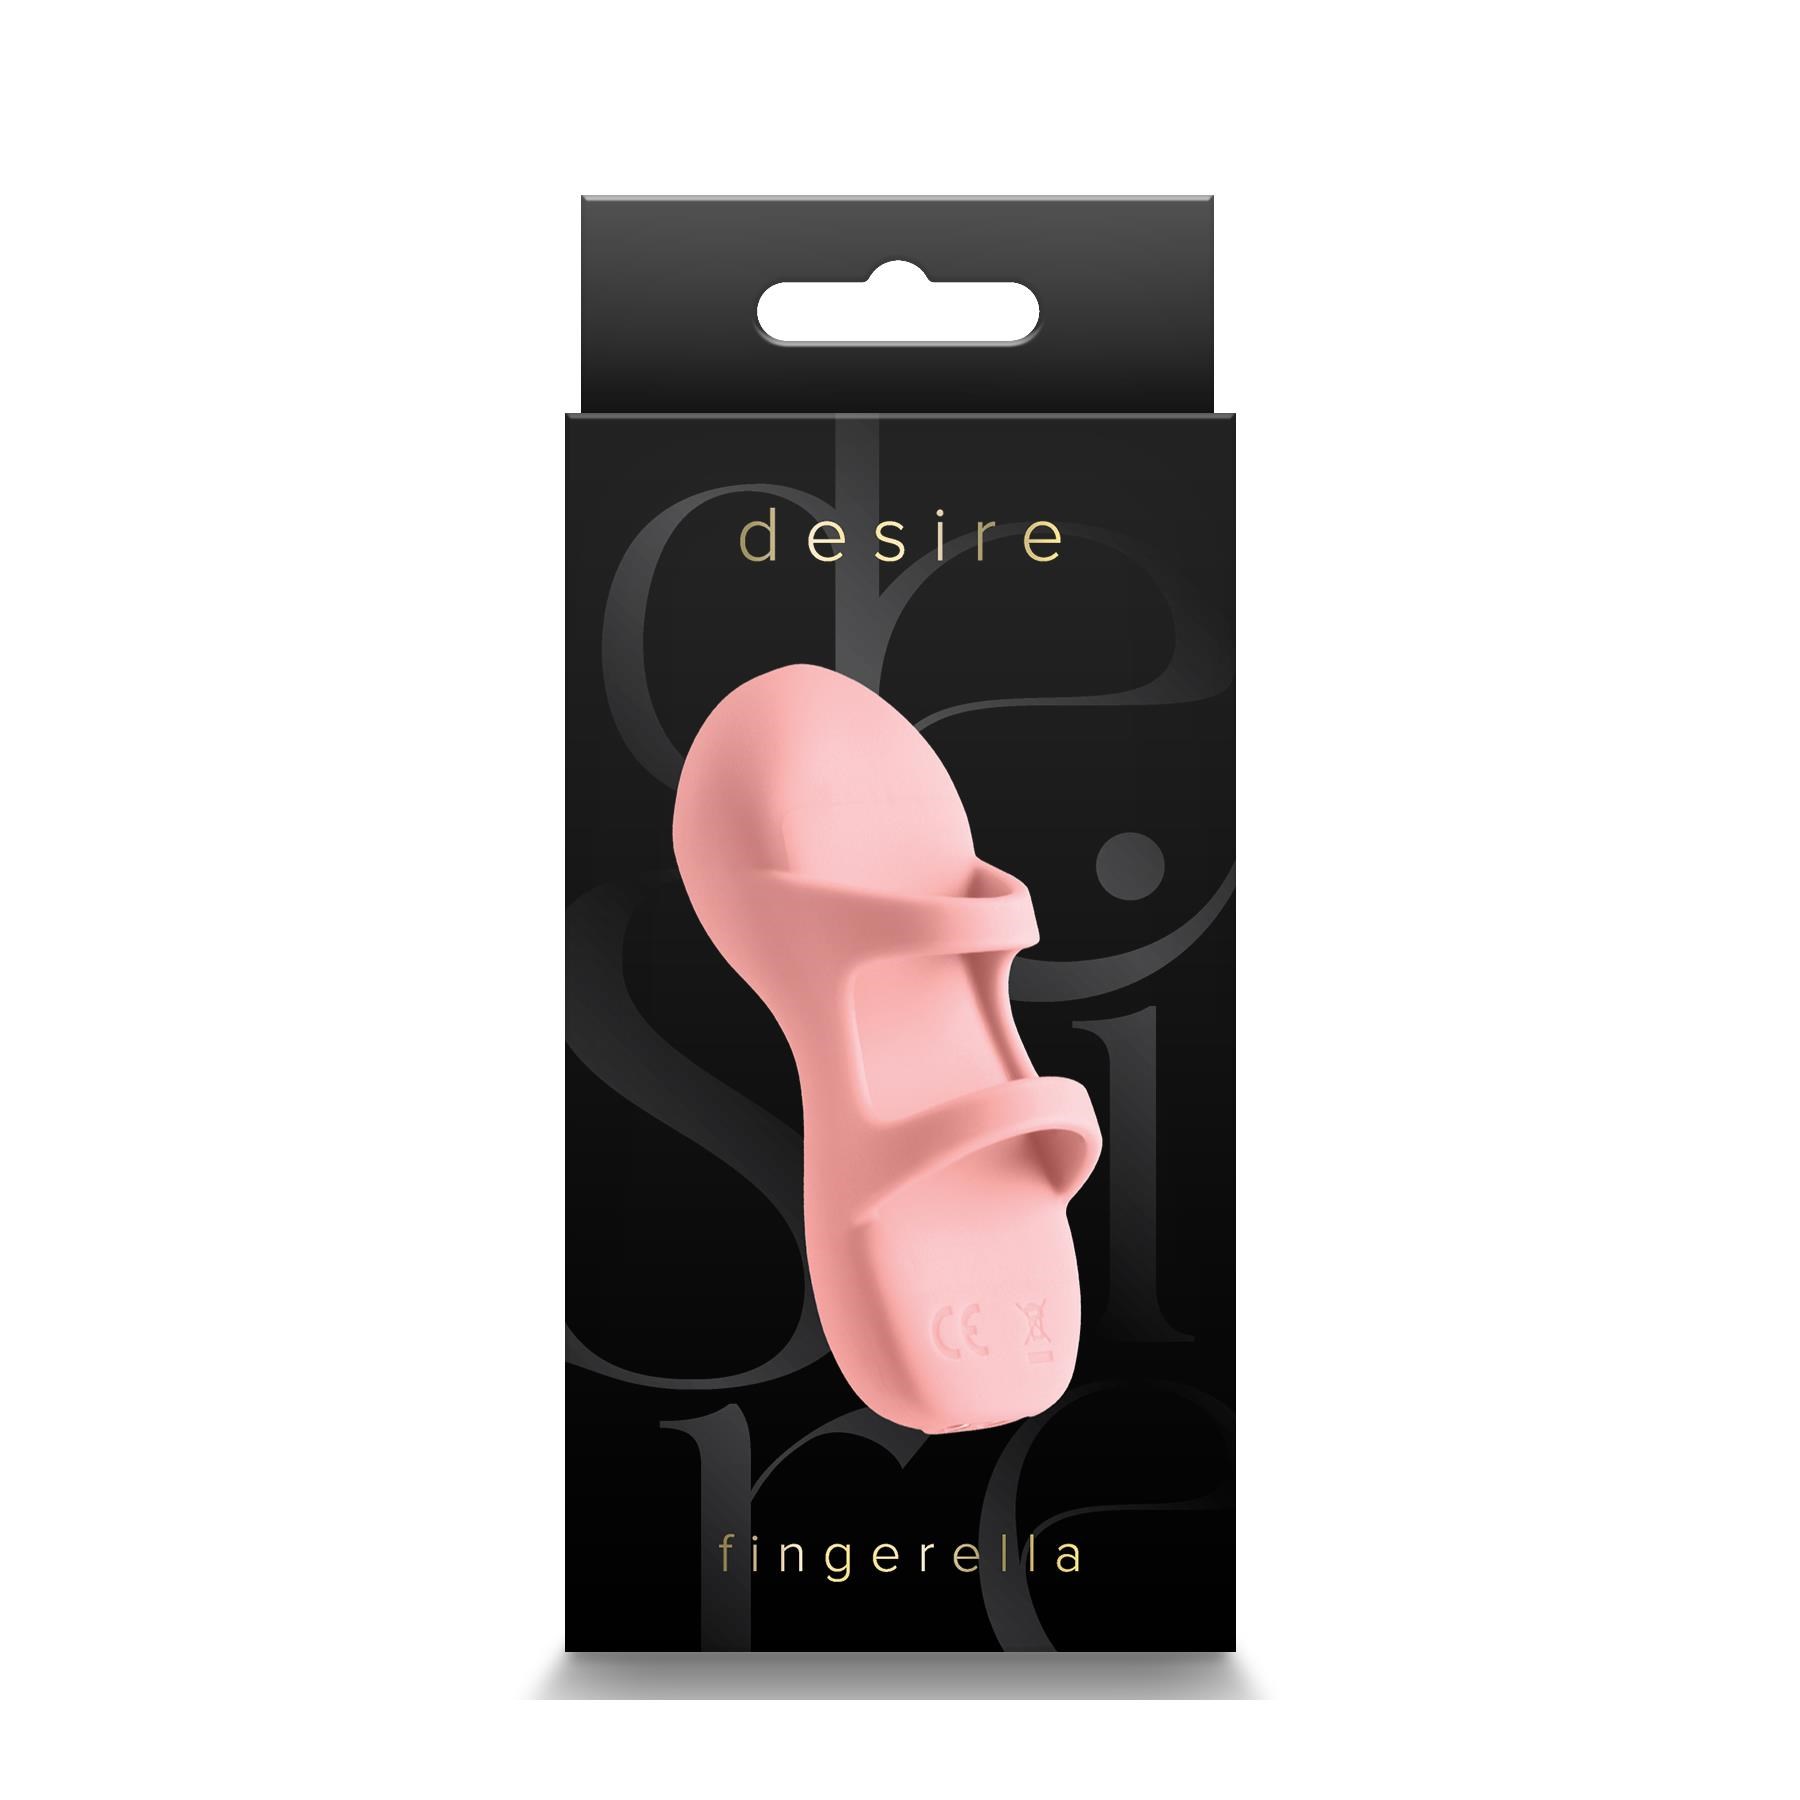 Desire Fingerella Finger Vibrator - Packaging